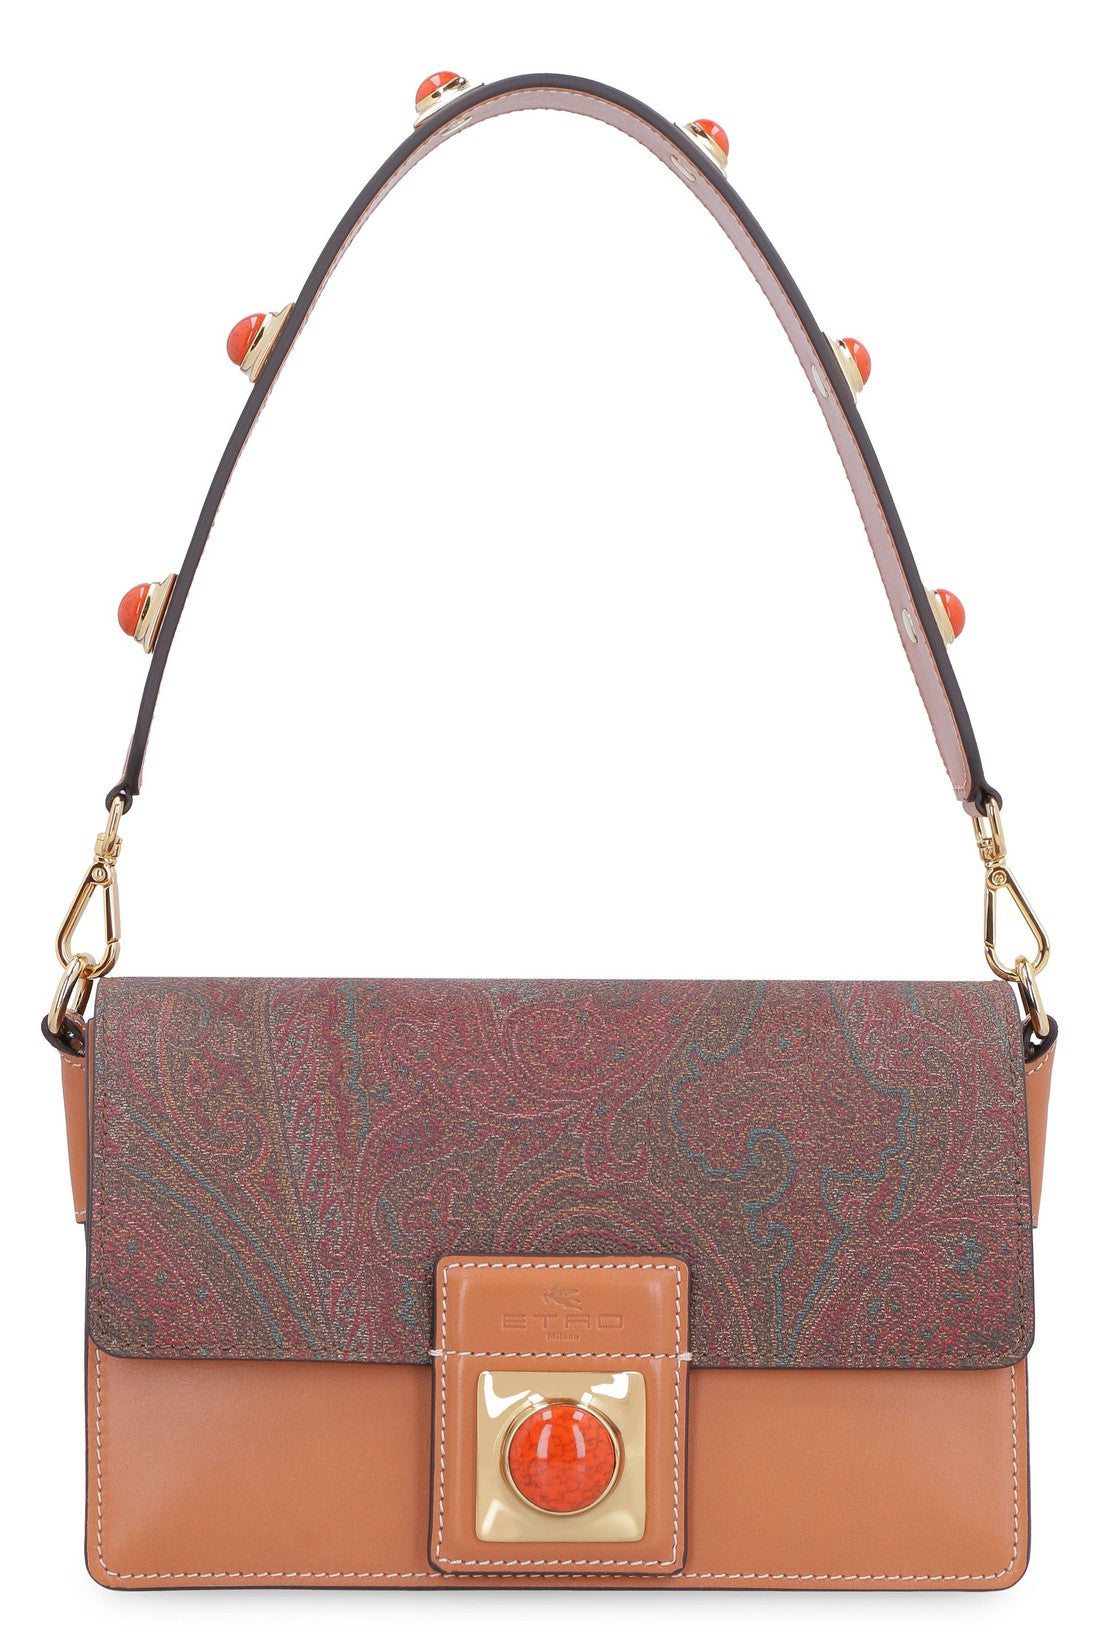 Etro-OUTLET-SALE-Crown Me handbag-ARCHIVIST